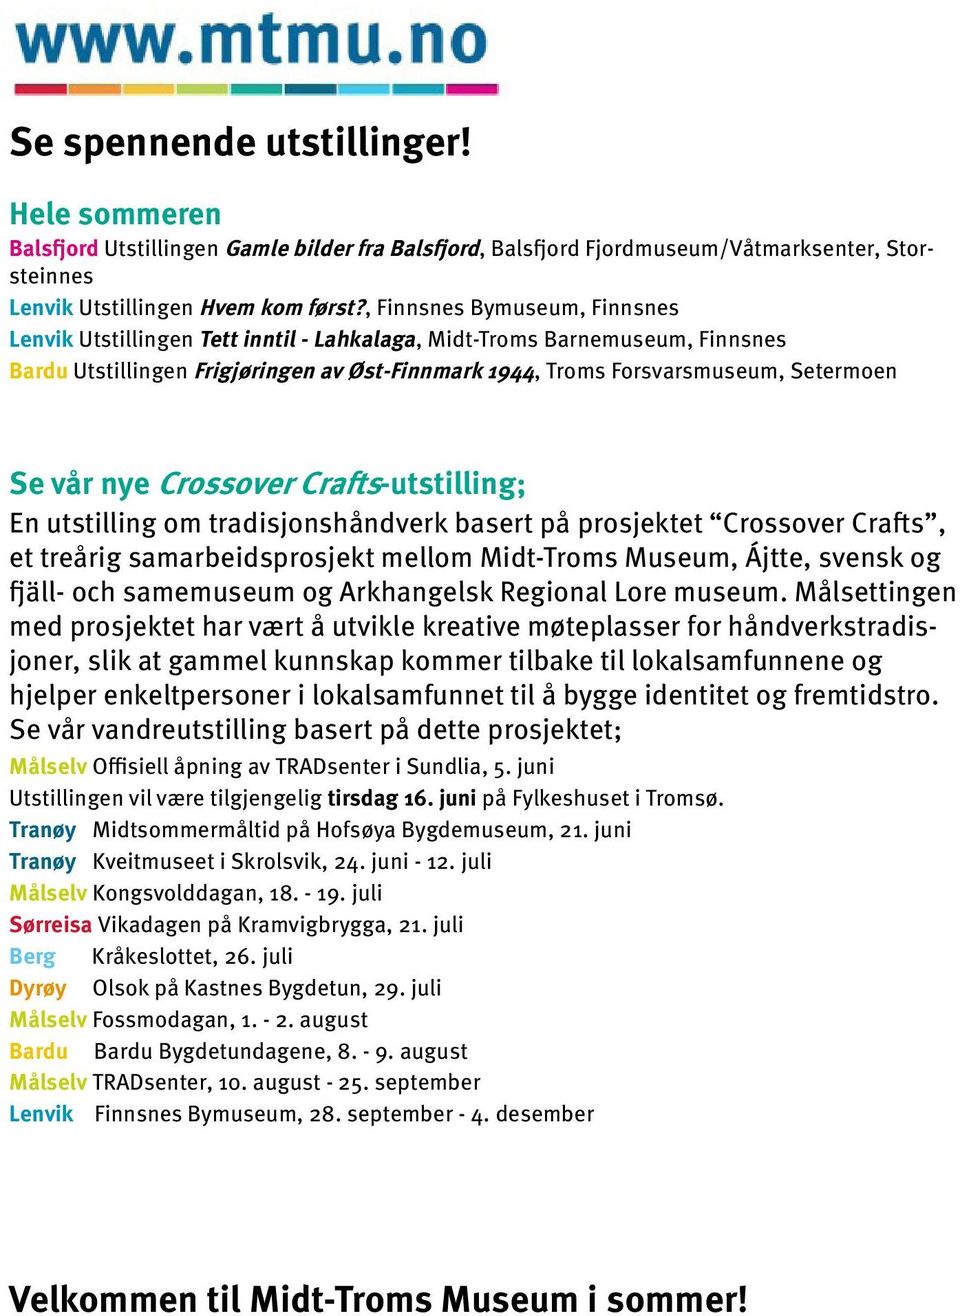 Crafts-utstilling; En utstilling om tradisjonshåndverk basert på prosjektet Crossover Crafts, et treårig samarbeidsprosjekt mellom Midt-Troms Museum, Ájtte, svensk og fjäll- och samemuseum og